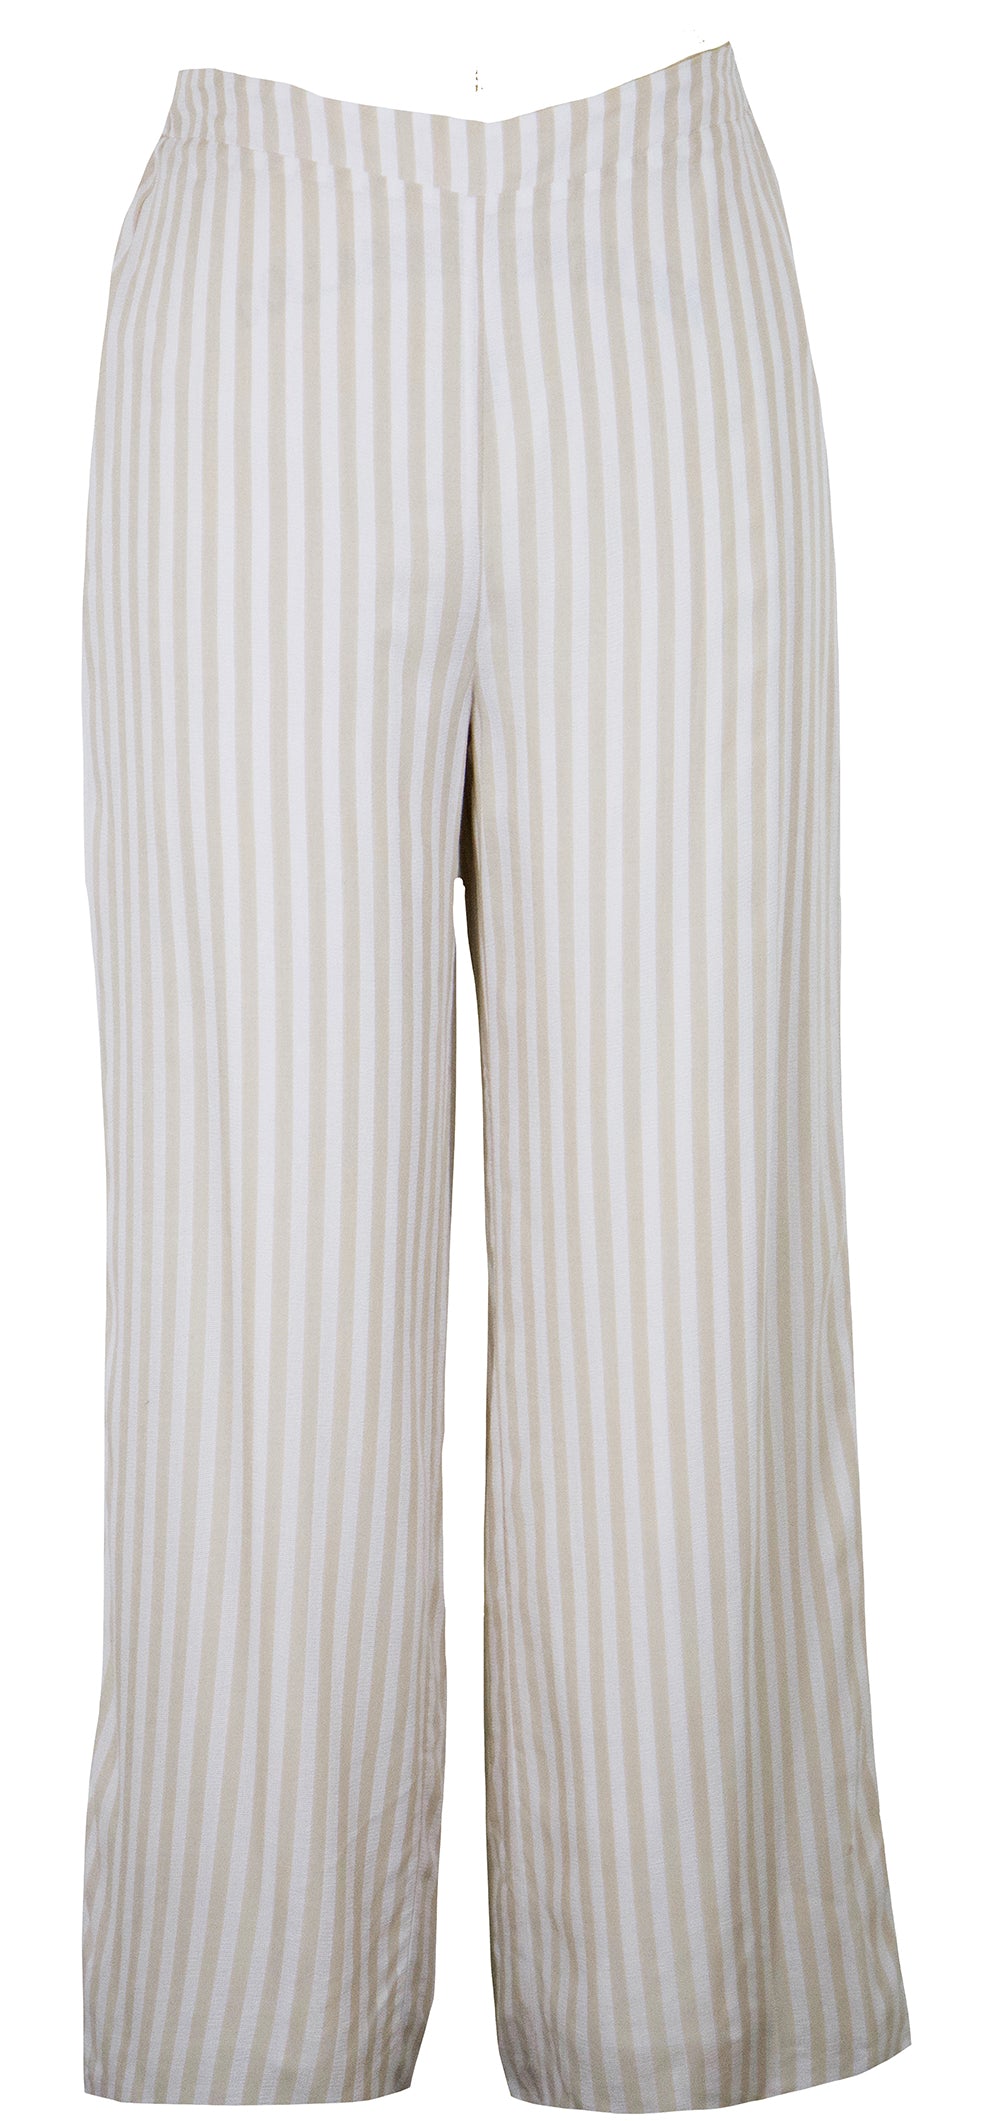 Zoya Striped Pant